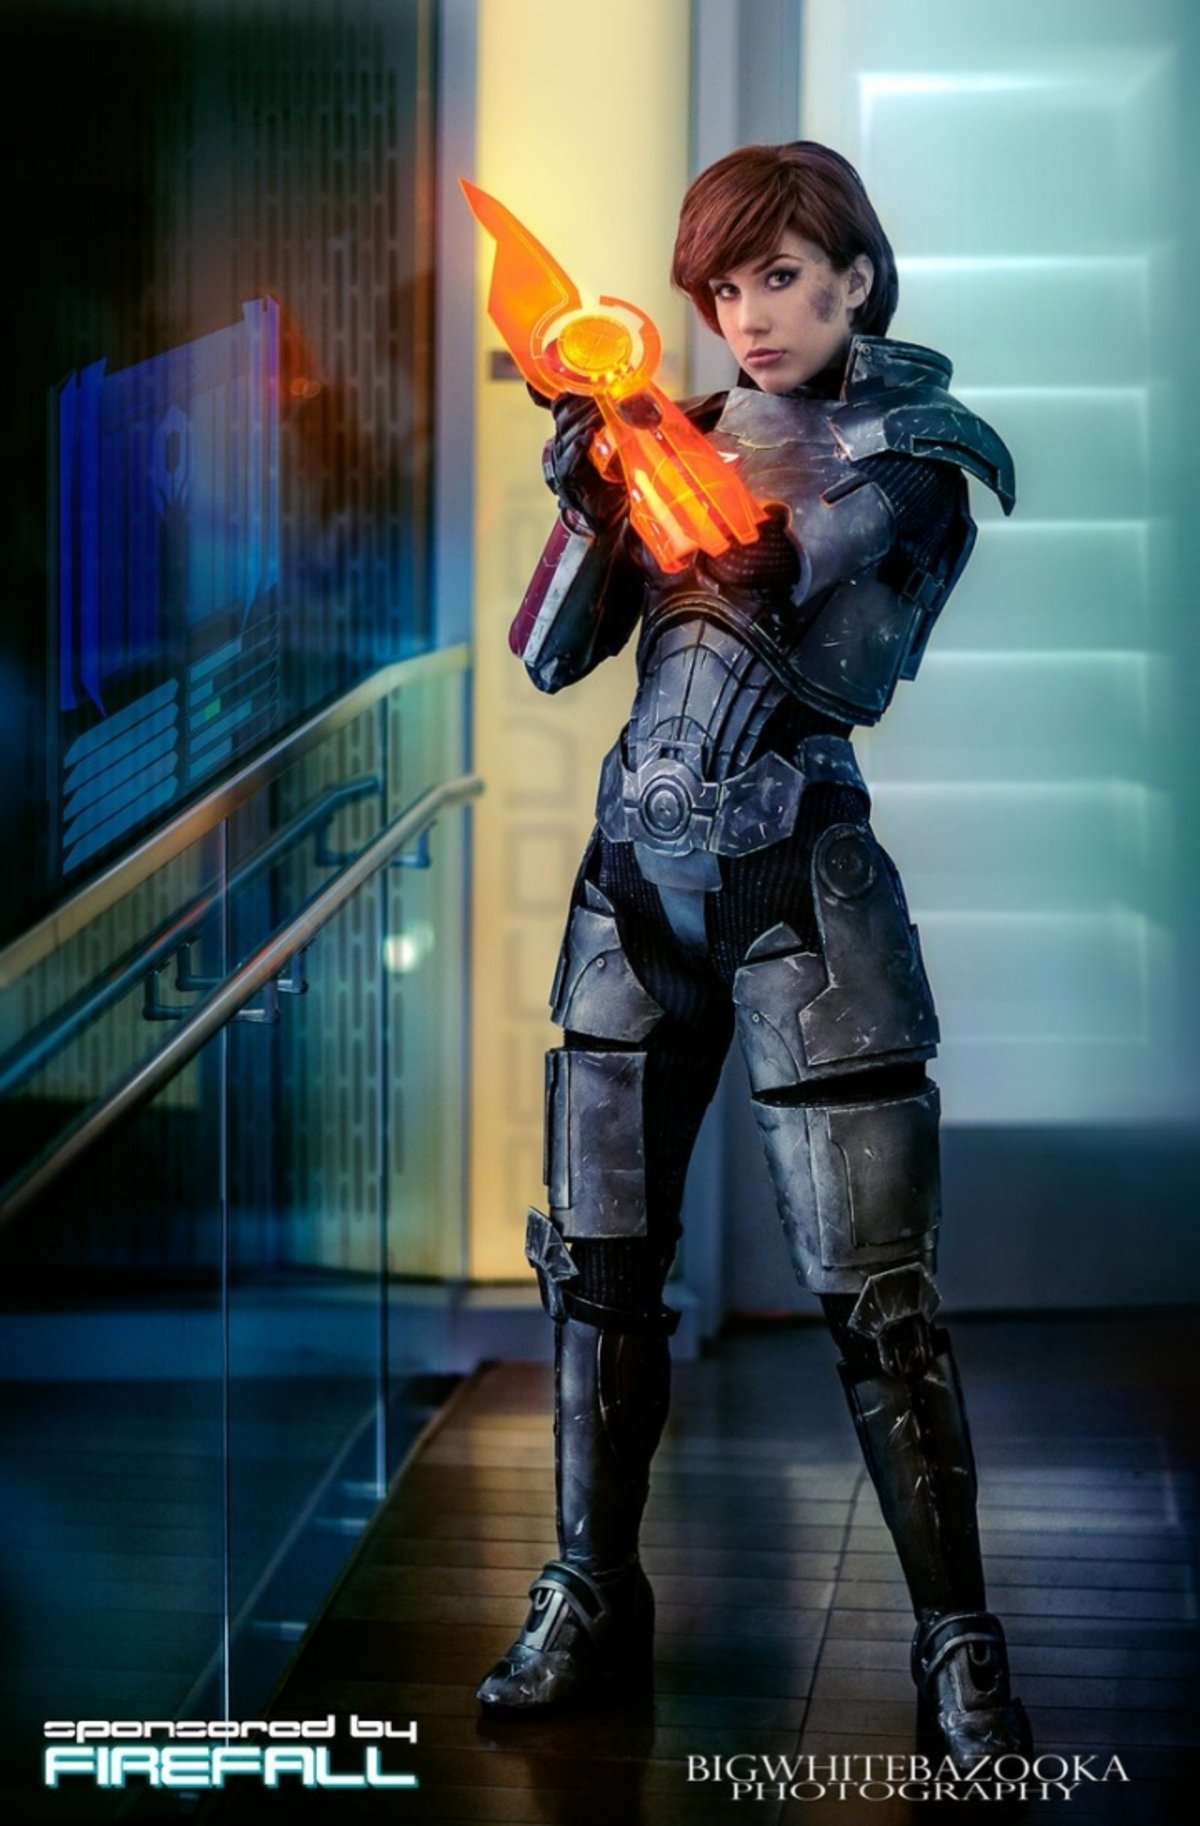 Estos 5 cosplay de Mass Effect son tan buenos que quitan el sentido